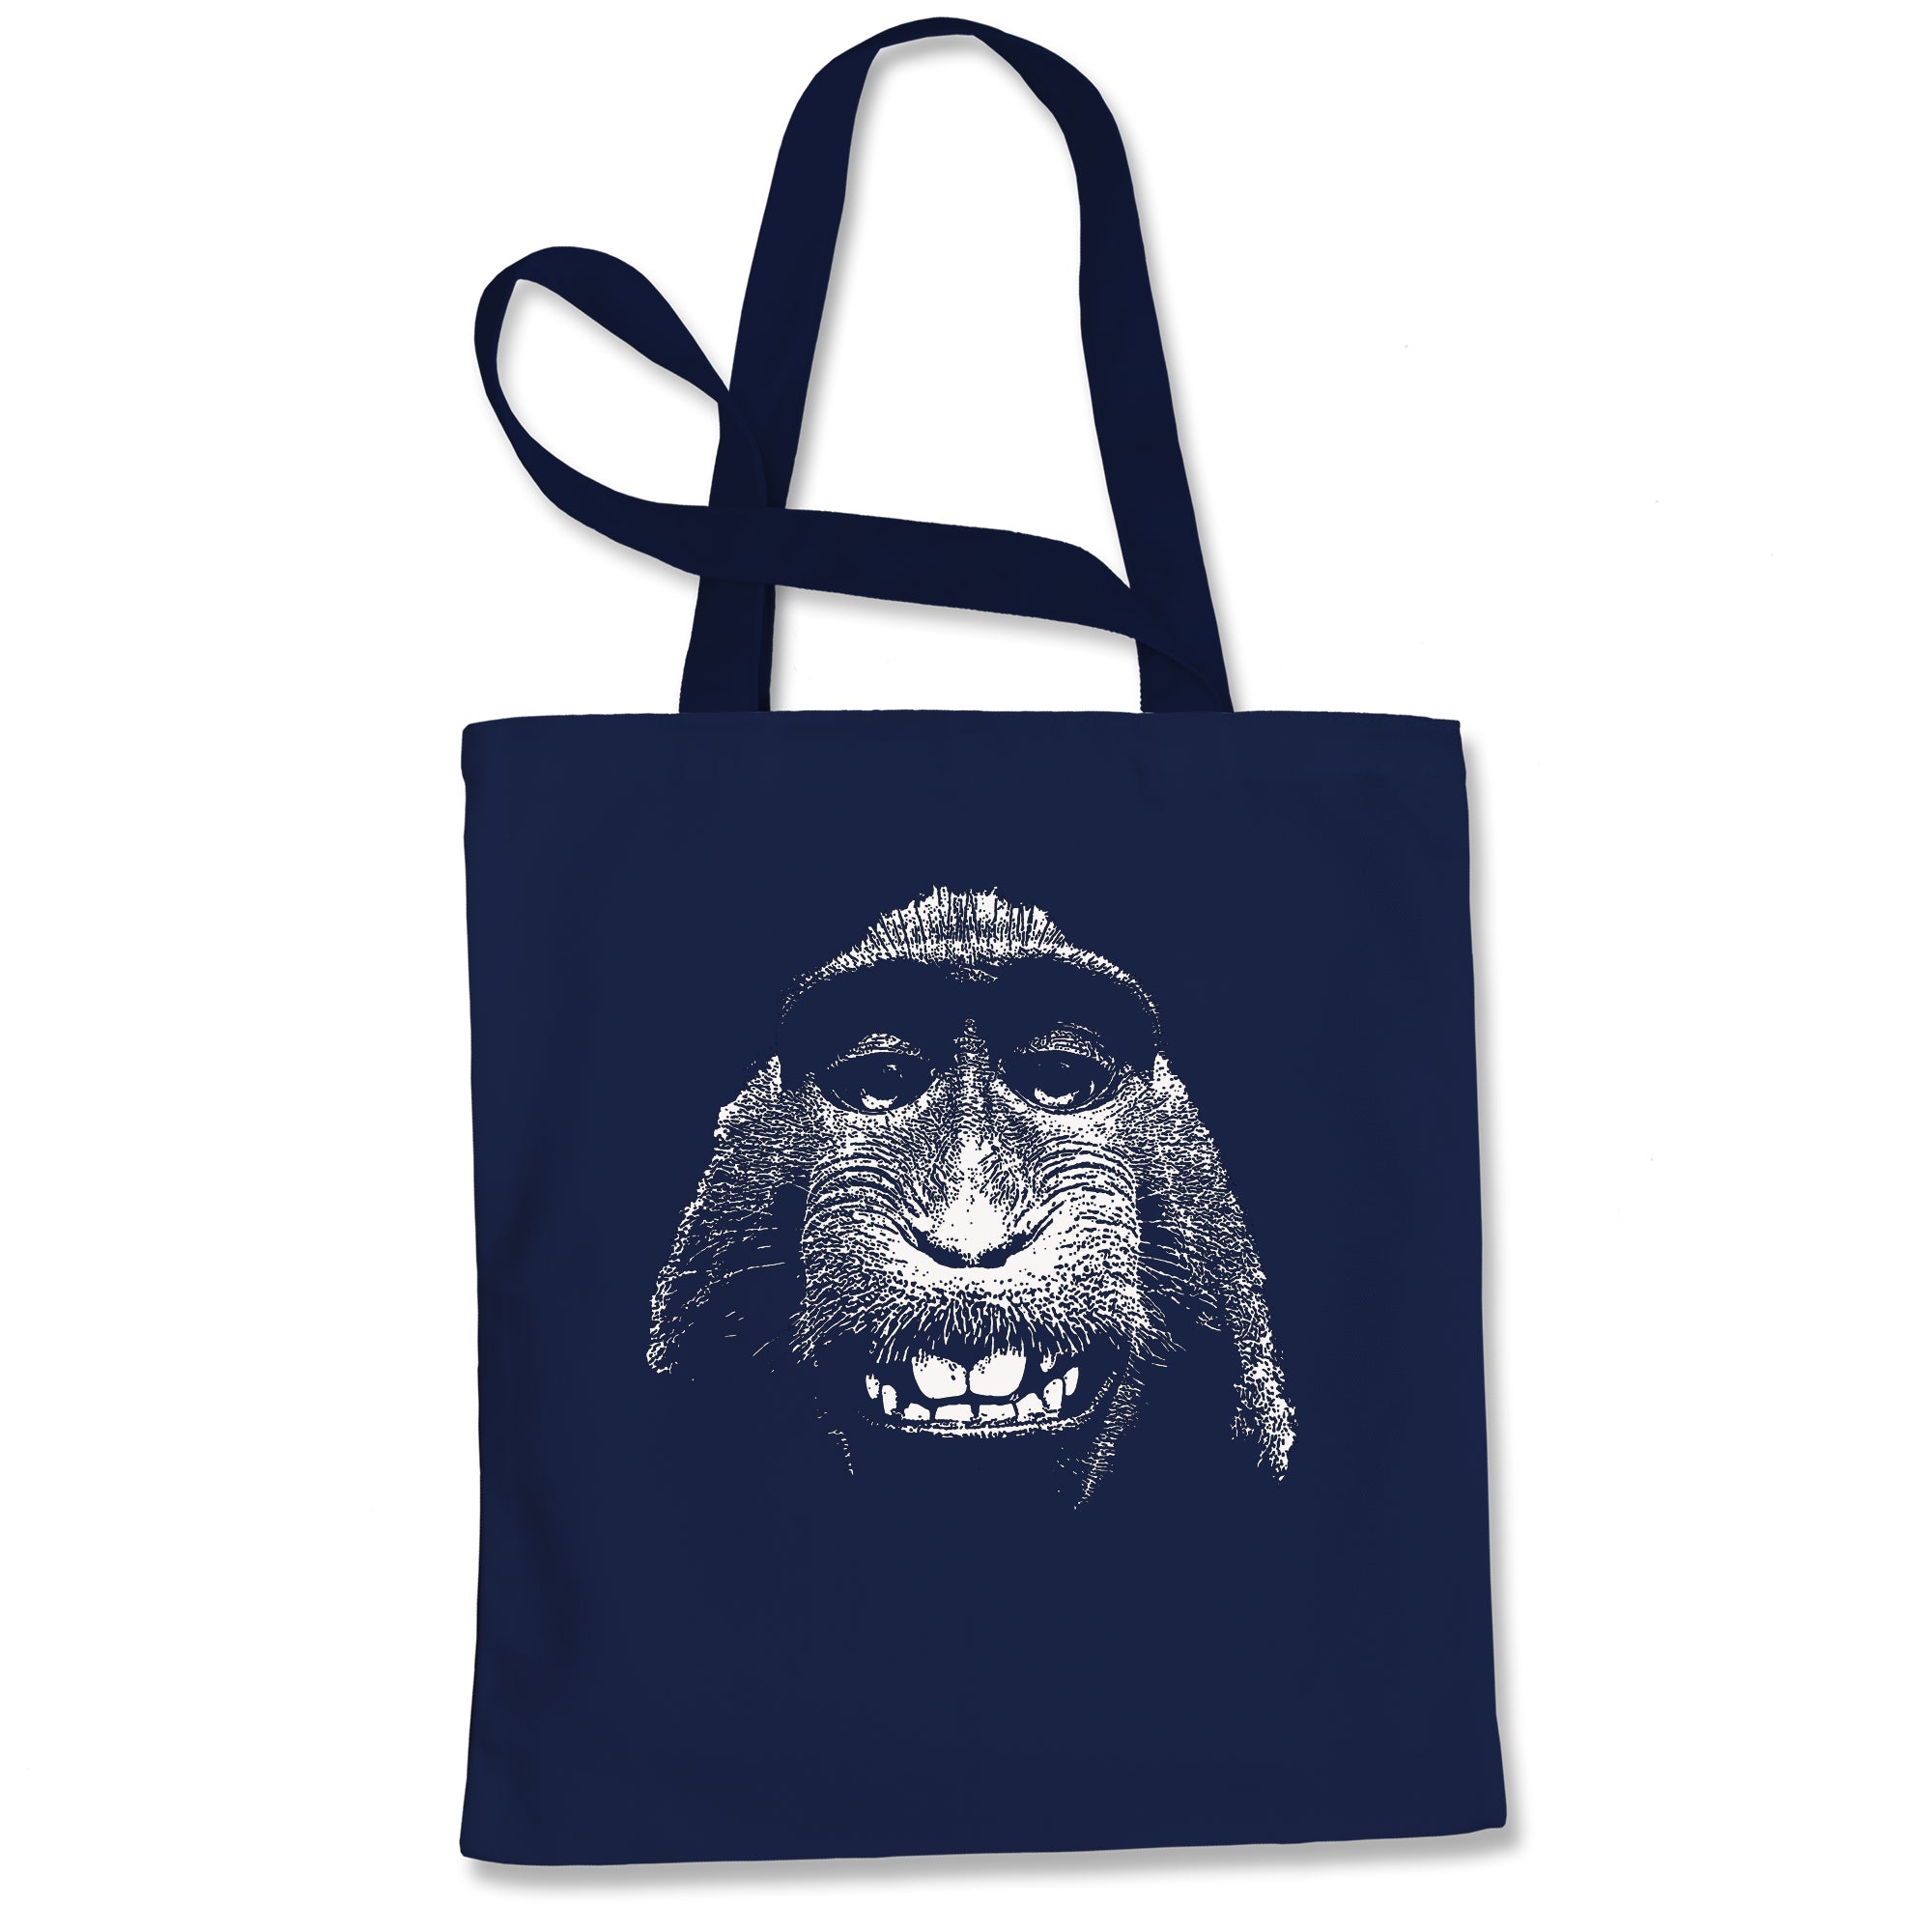 Selfie Monkey Tote Bag